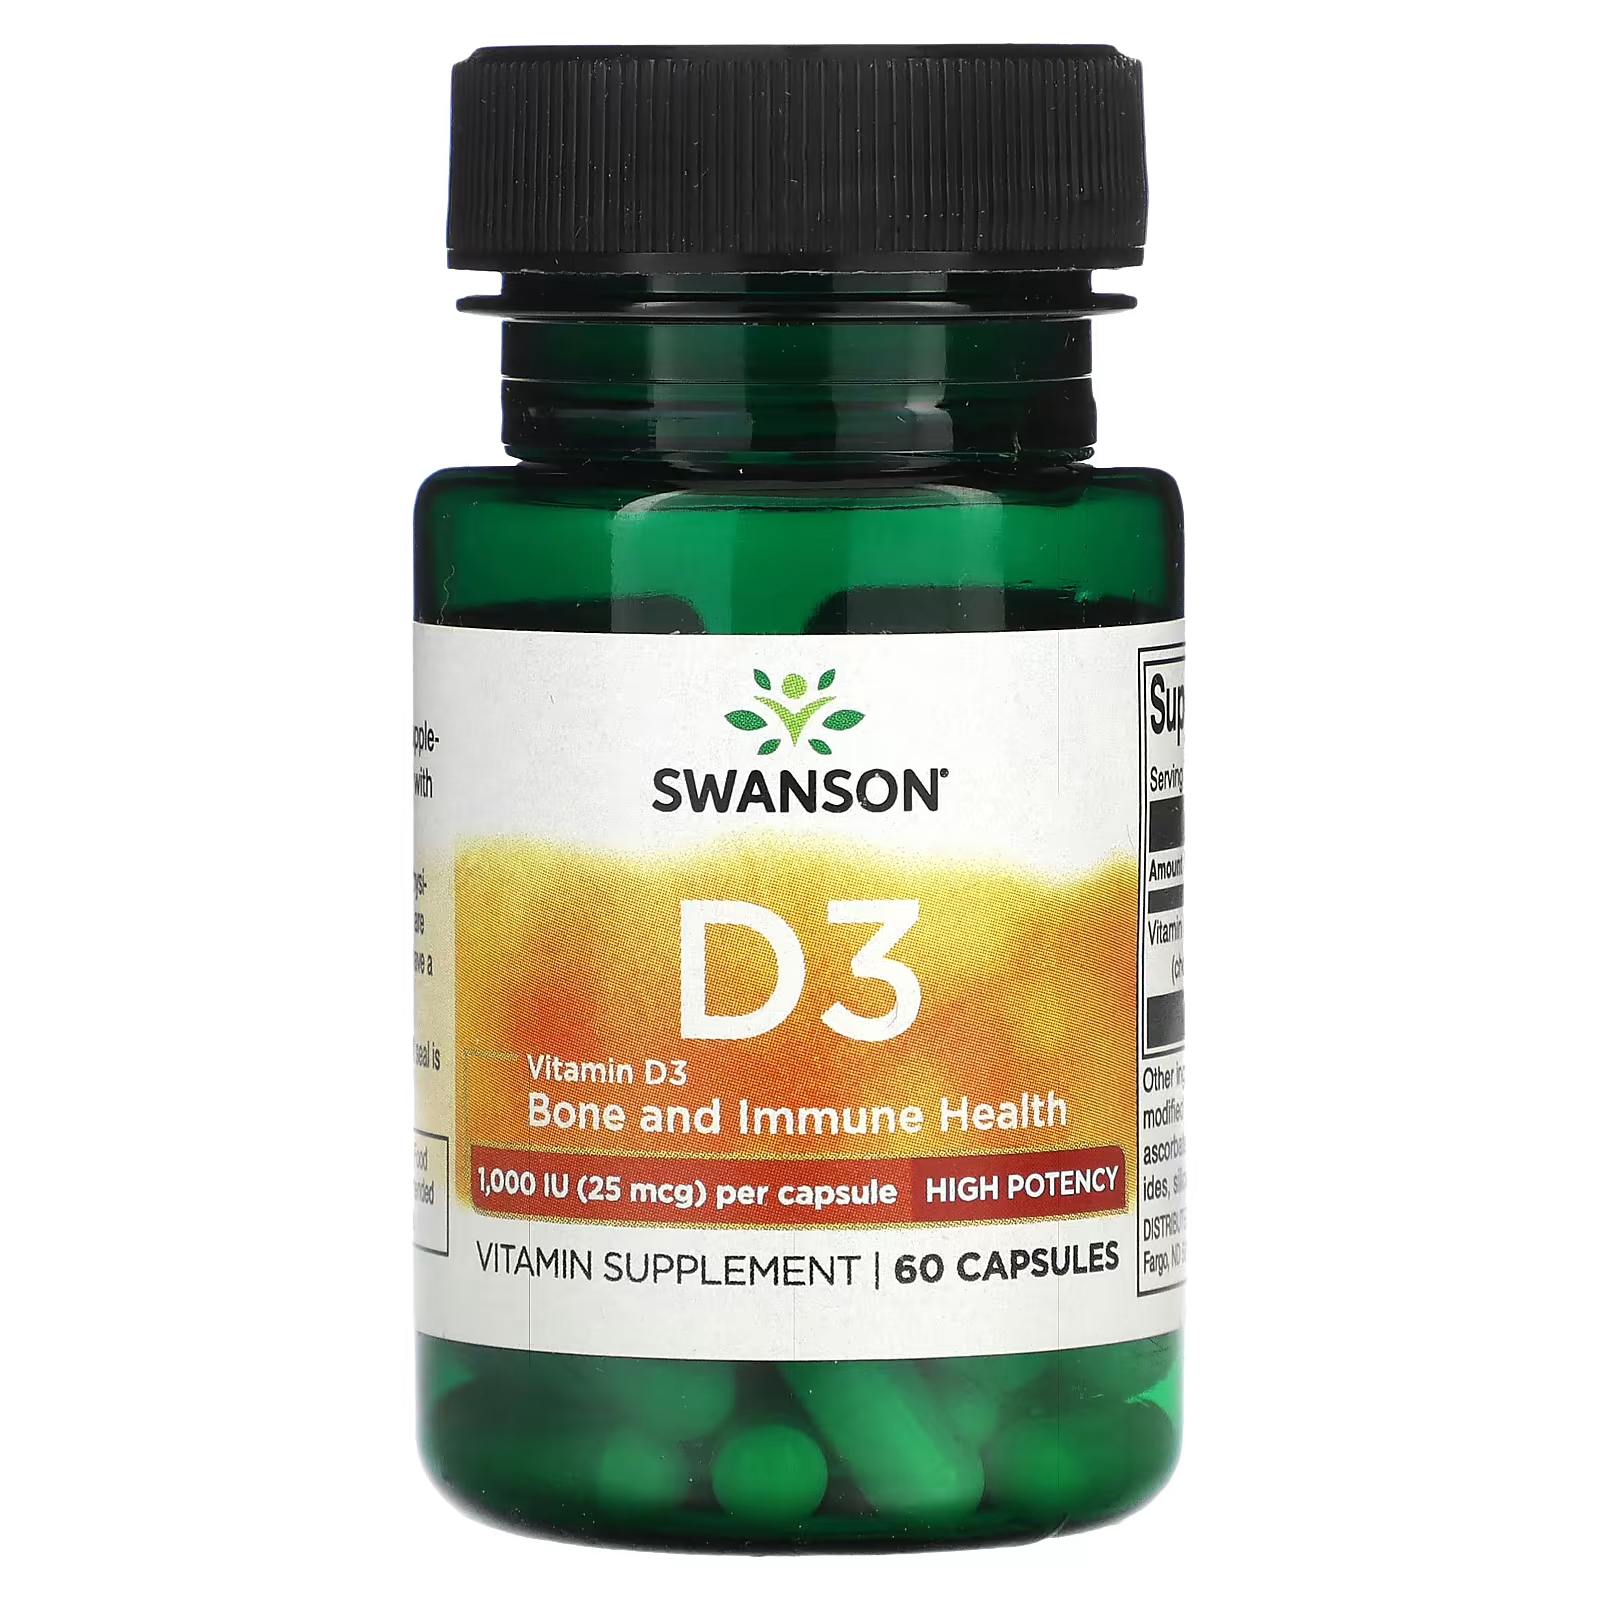 Витамин D3 Swanson высокой эффективности, 60 капсул